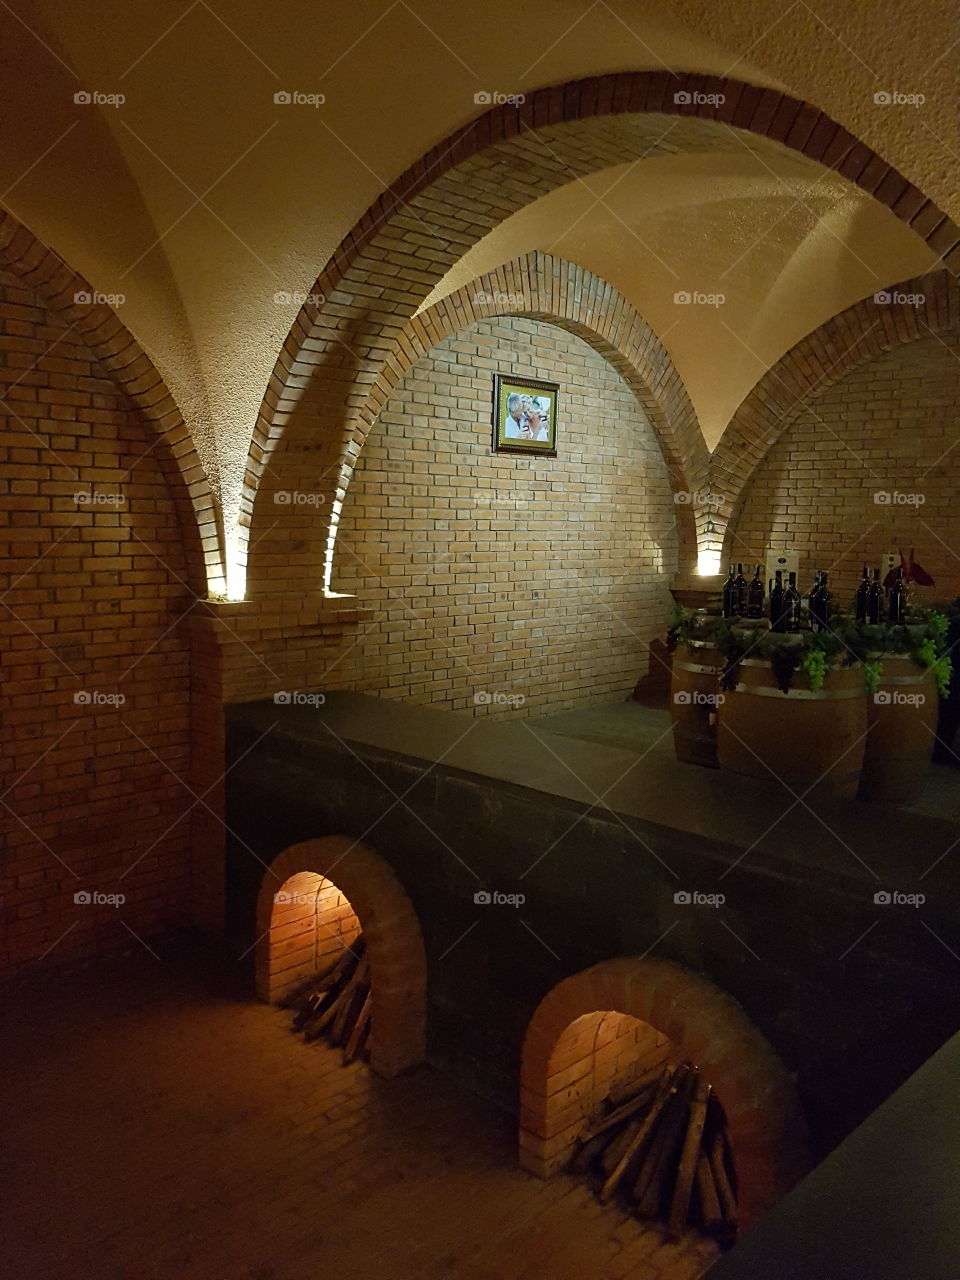 cellar
the cornor of the wine cellar